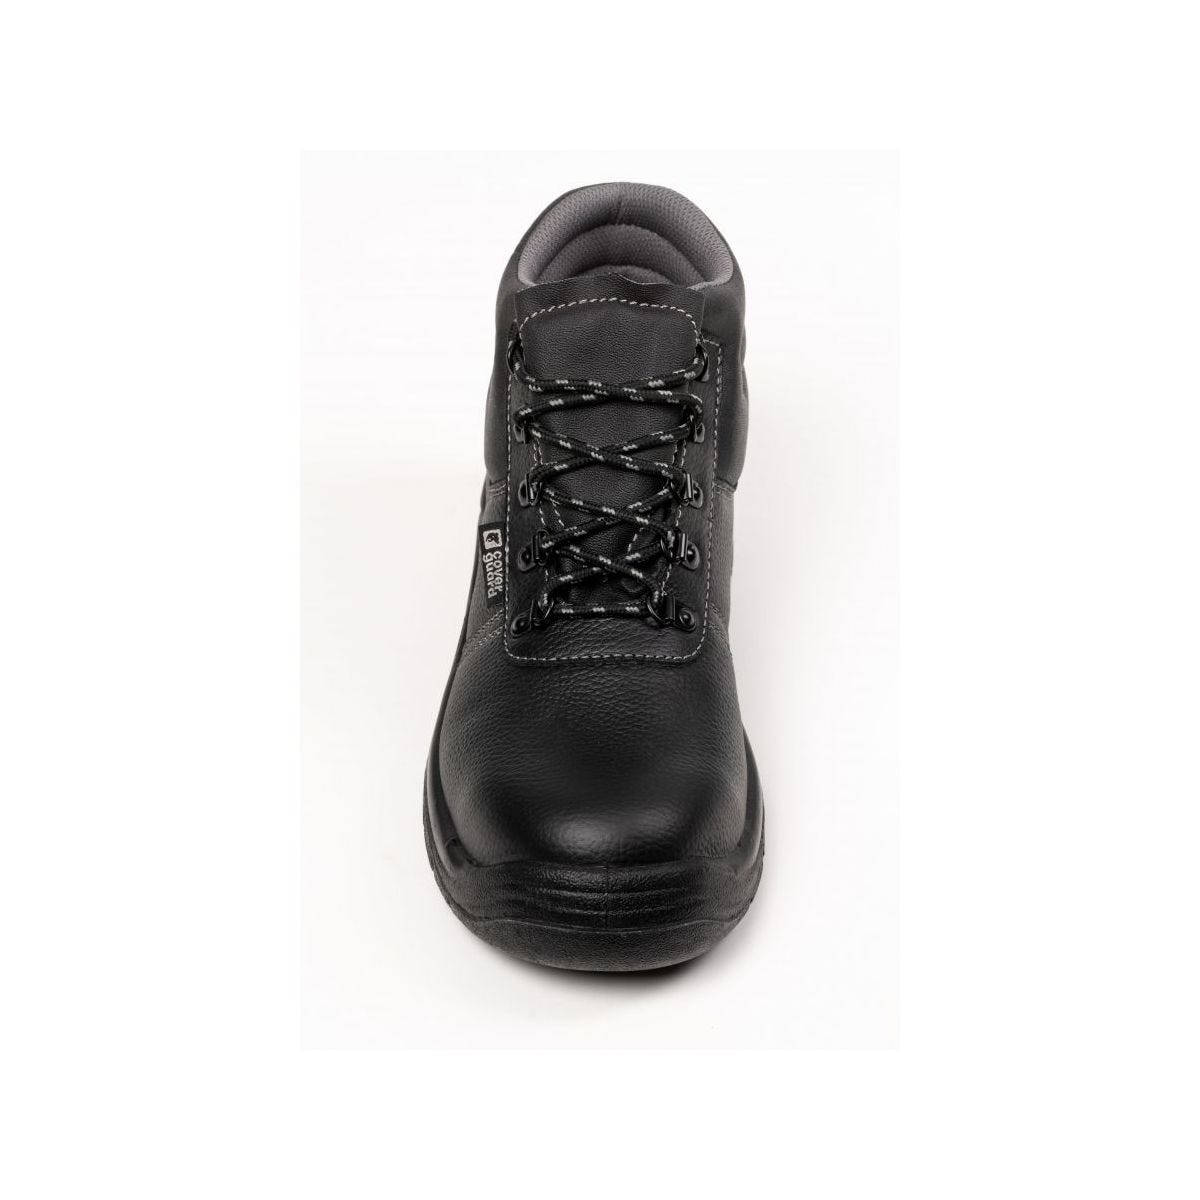 Chaussures de sécurité hautes AGATE II S3 Noir - Coverguard - Taille 39 3